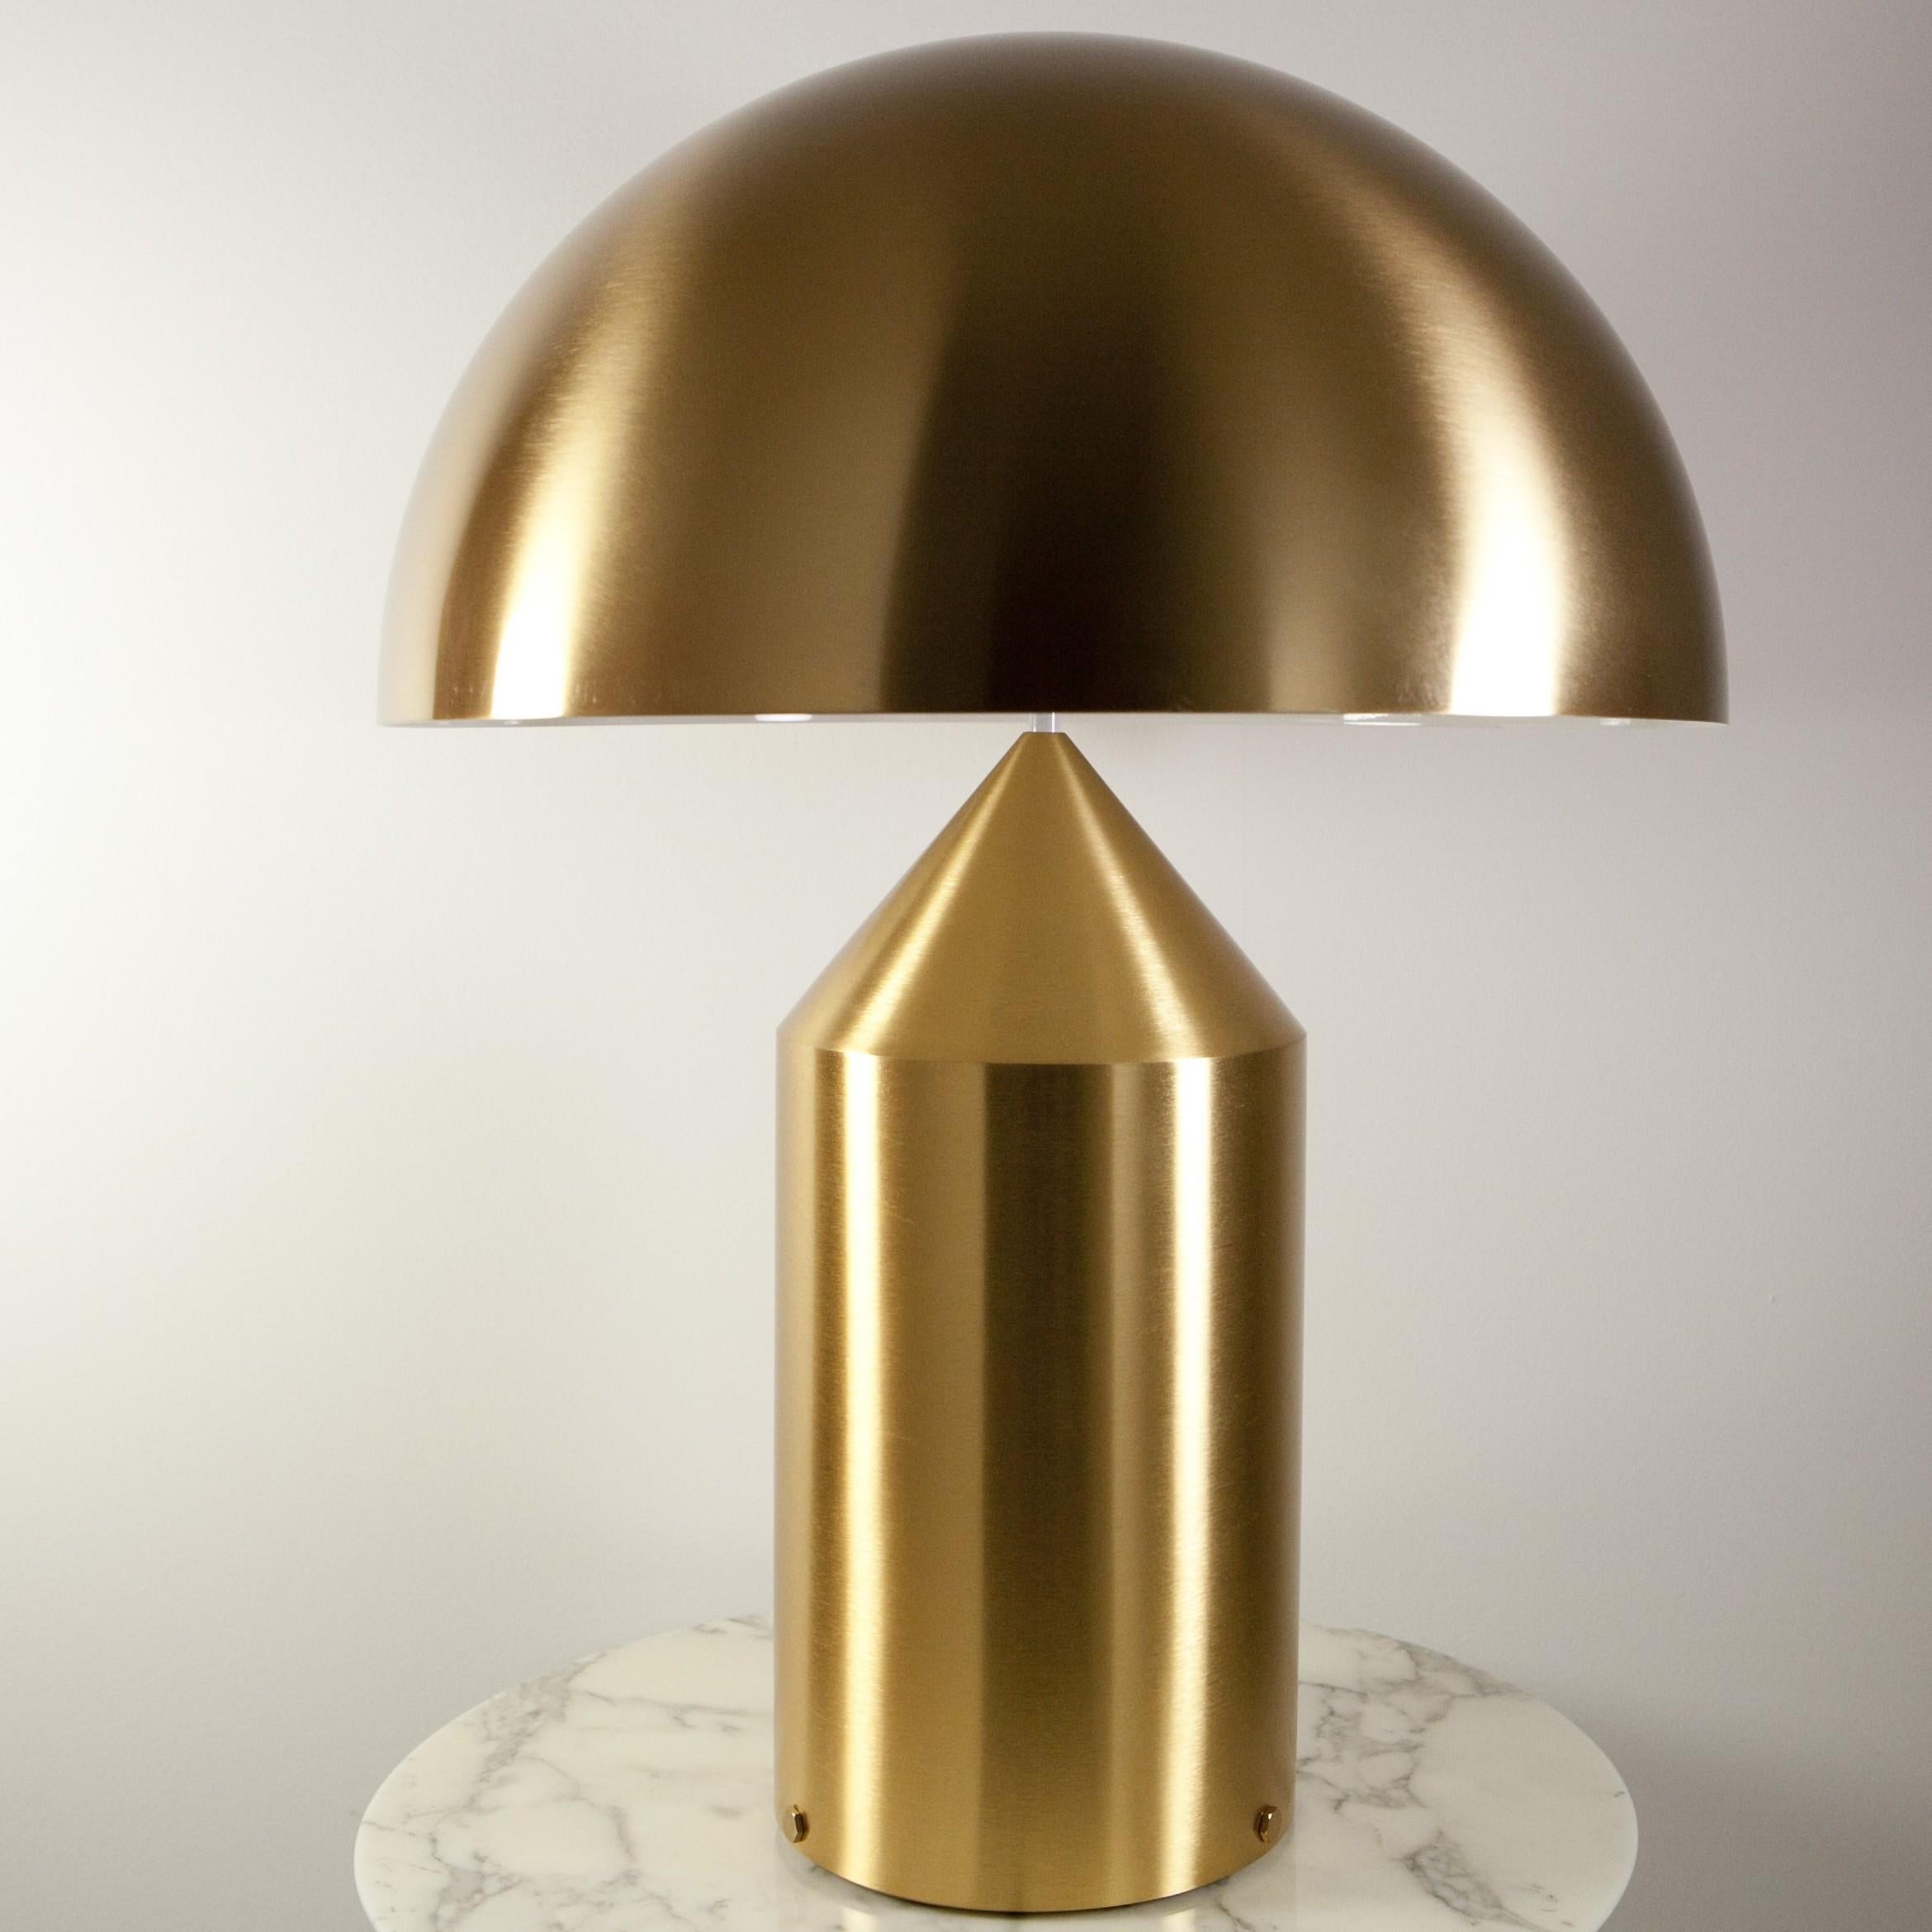 Tischleuchte Atollo aus Metall von Vico Magistretti für Oluce. Die Atollo-Lampe ist zu einer ikonischen Darstellung der Tischleuchte geworden. Der schlichte Zylinder, der Kegel und die Halbkugel verbinden sich auf so einfache, aber starke Weise,